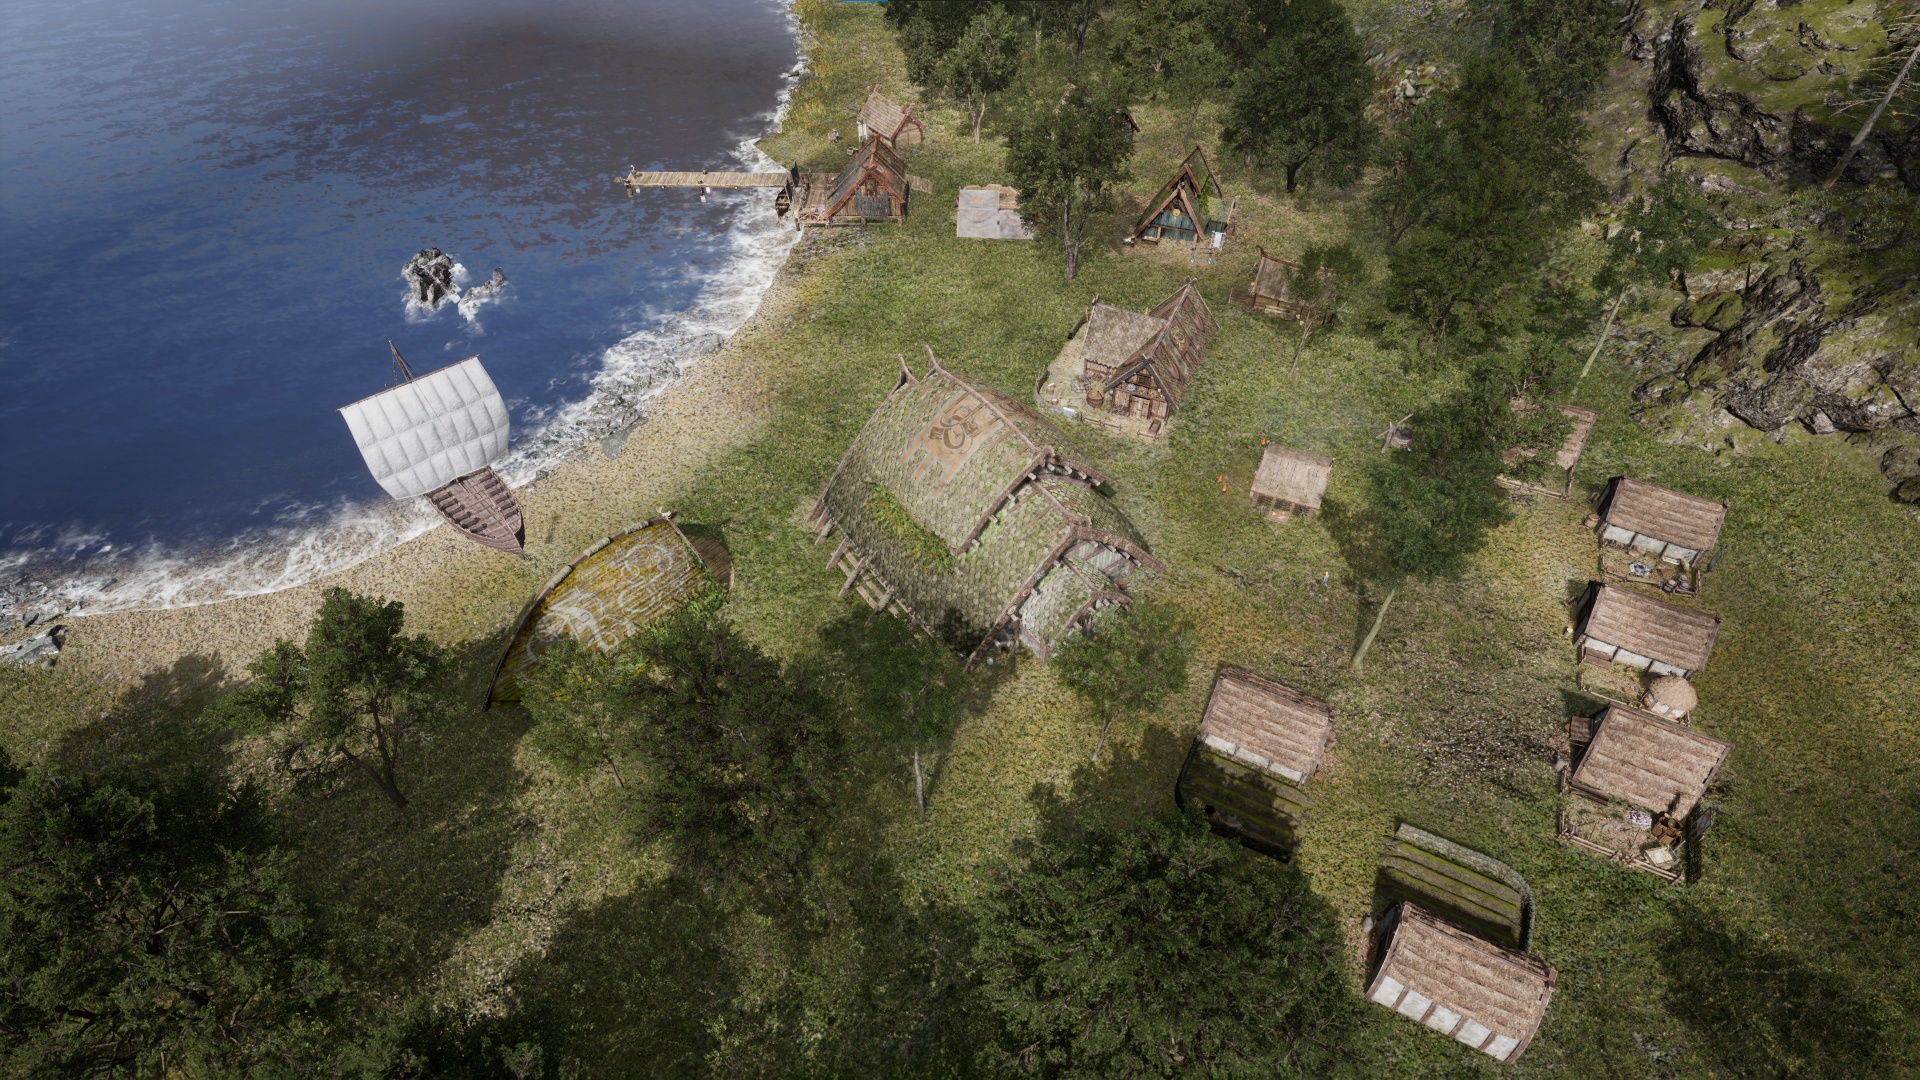 (Un asentamiento vikingo necesita muchas cosas: sala de hidromiel, casas, notas, talleres y, por supuesto, barcos)